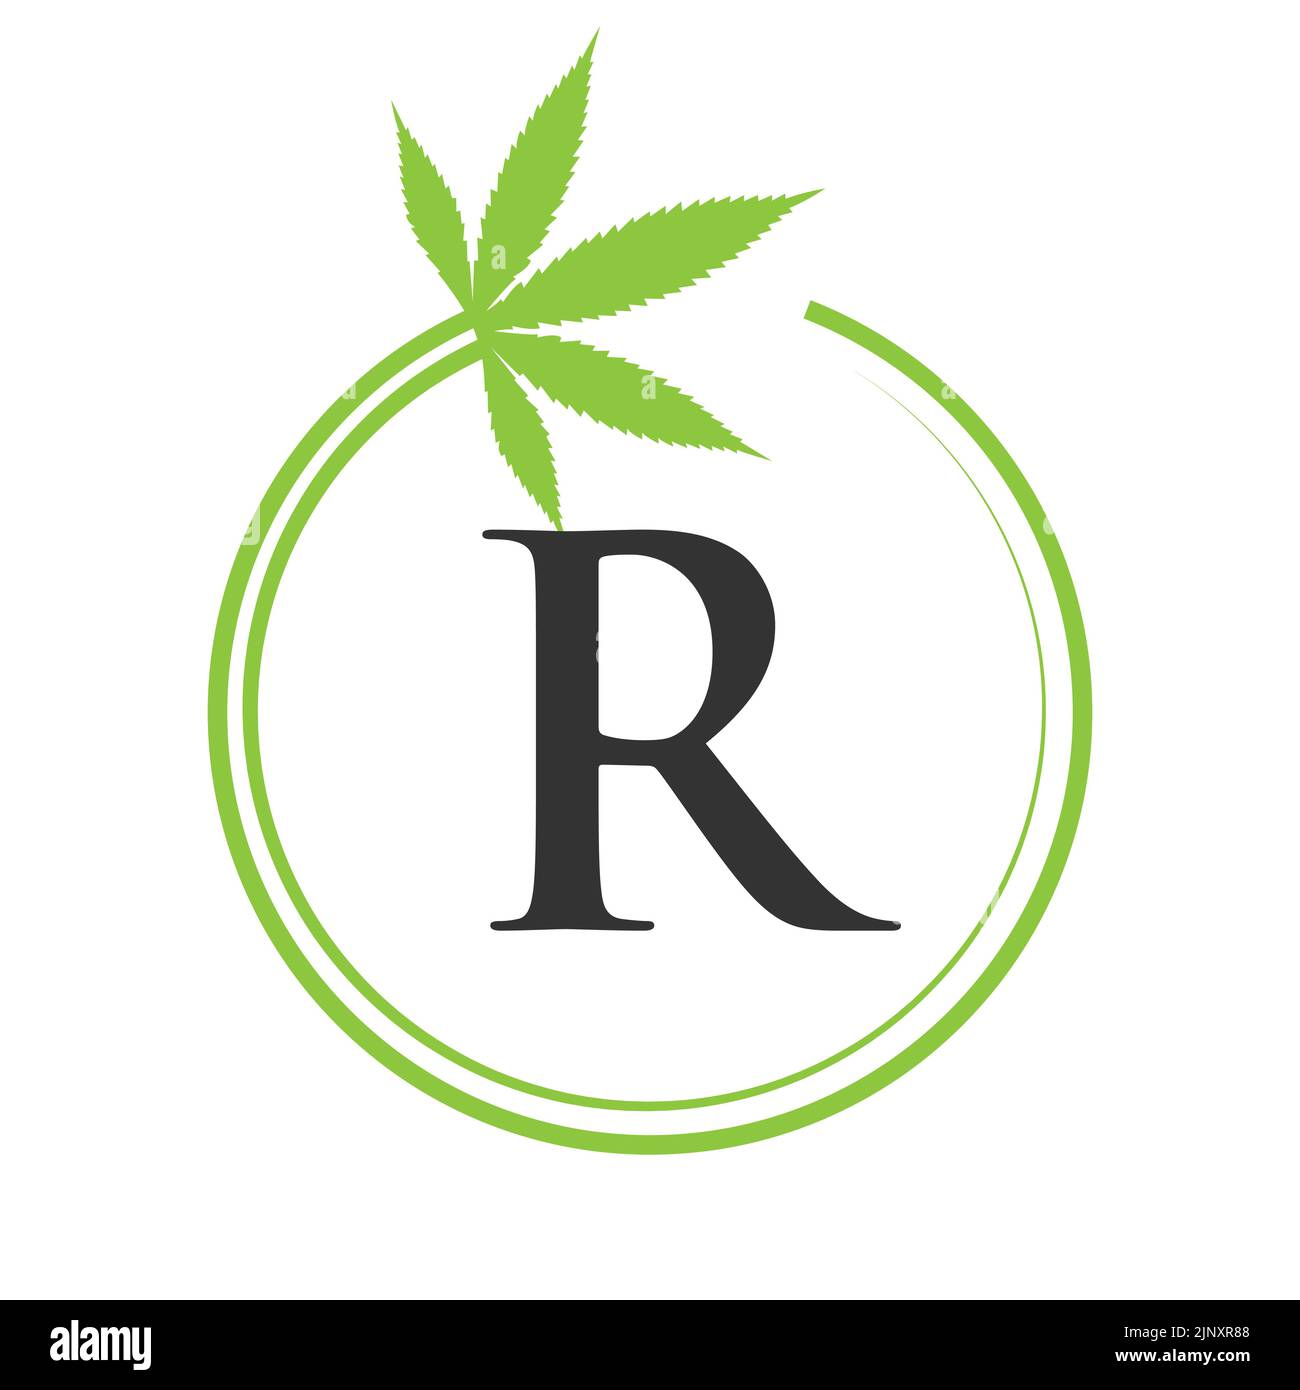 Cannabis marijuana logo sur la lettre R concept pour la santé et la thérapie médicale. Modèle d'affiche pour marijuana et cannabis Illustration de Vecteur